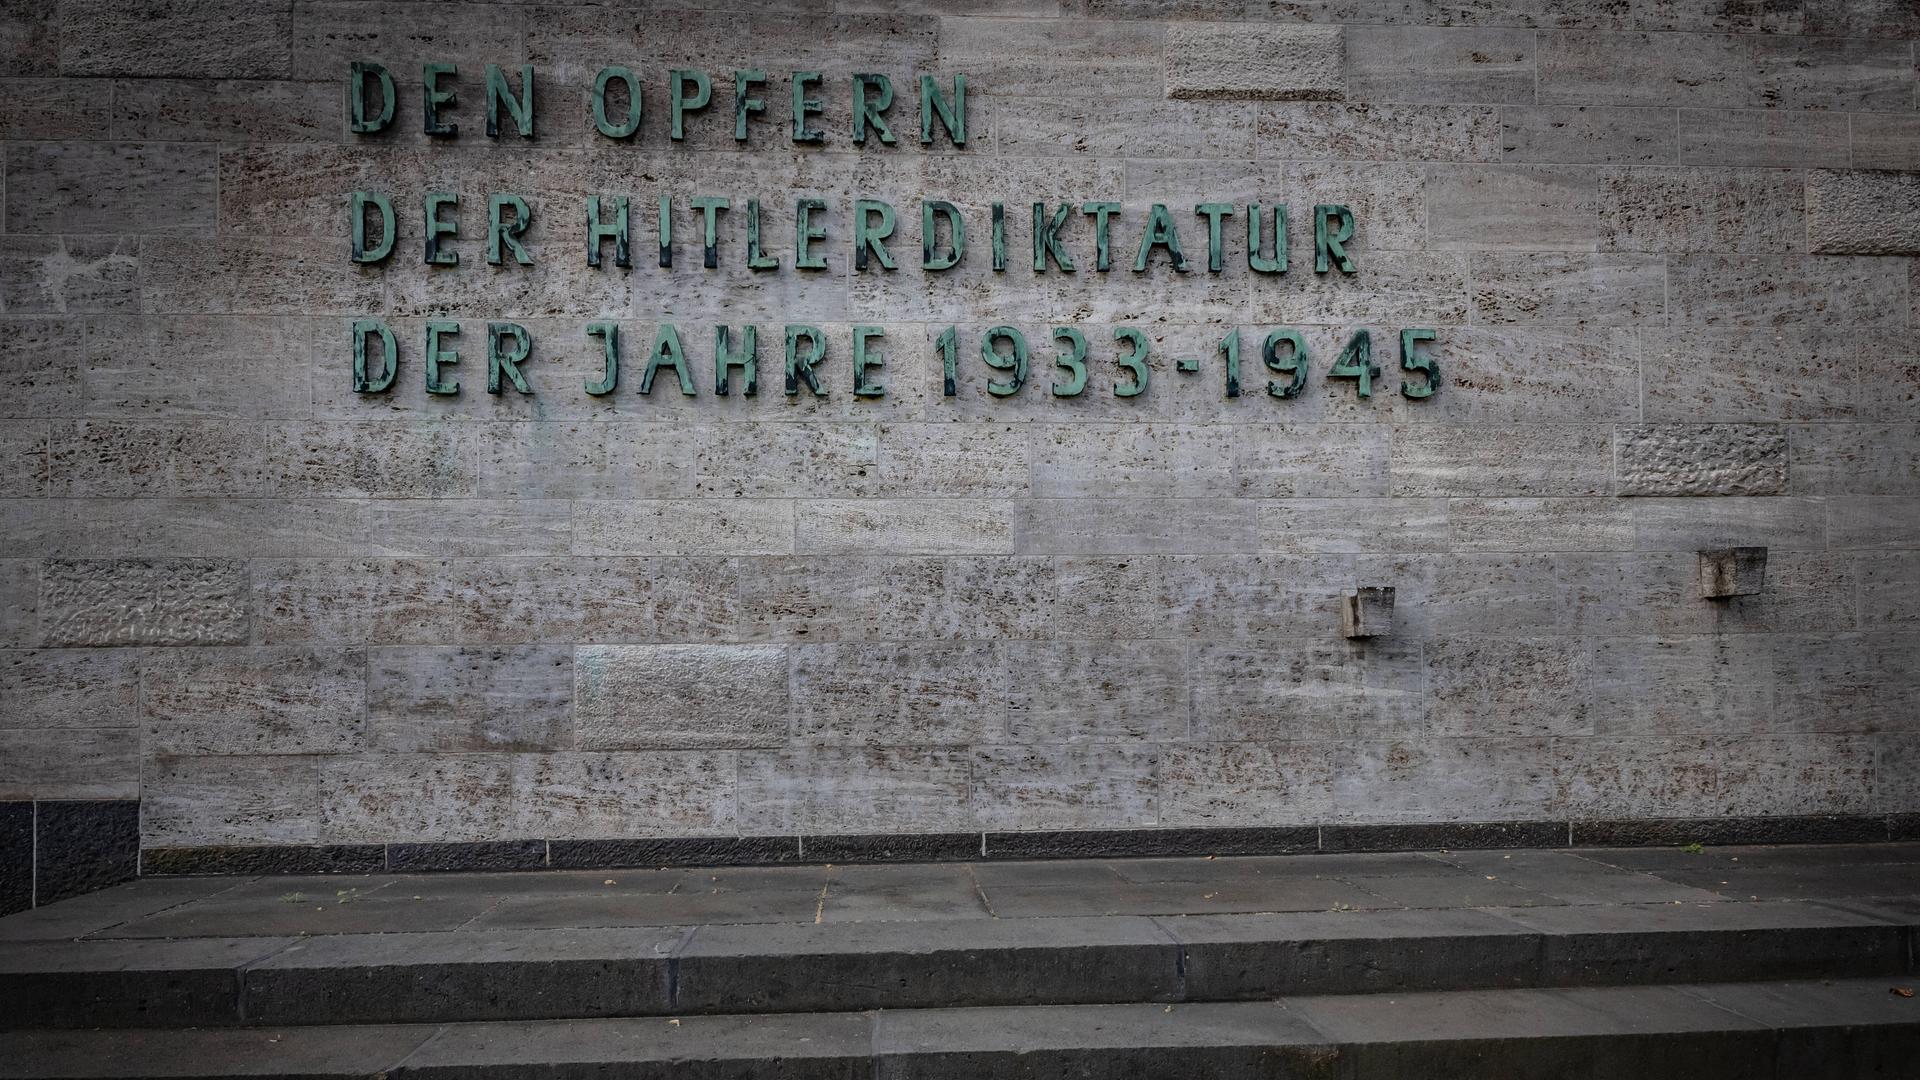 Auf einer Mauer steht in Großbuchstaben: Den Opfern der Hitler-Diktatur der Jahre 1933 bis 1945.